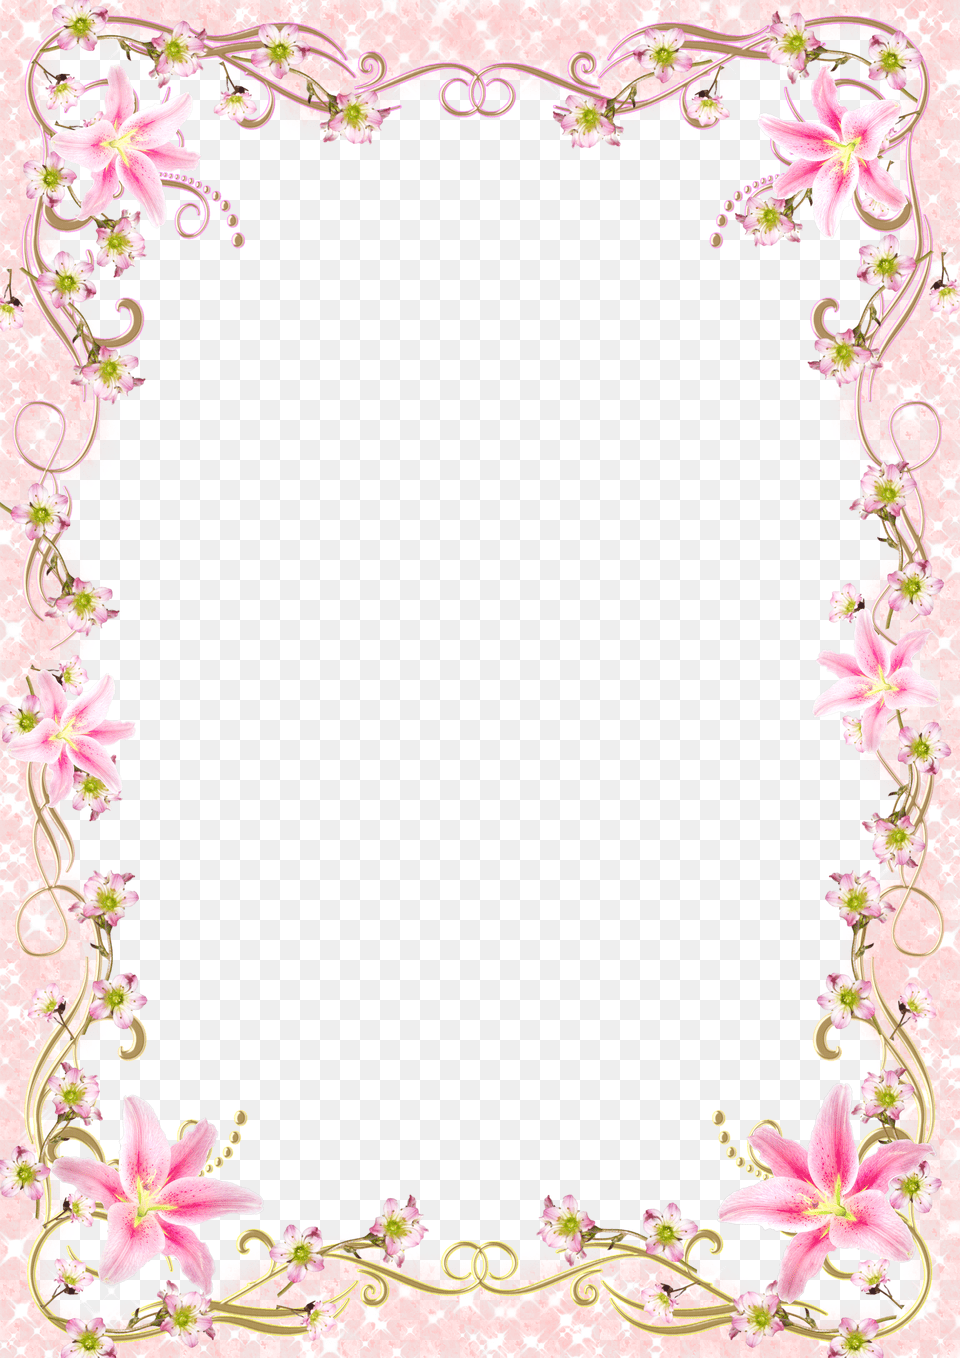 Pink Floral Border Jpg Frame Border Line Design Free Transparent Png